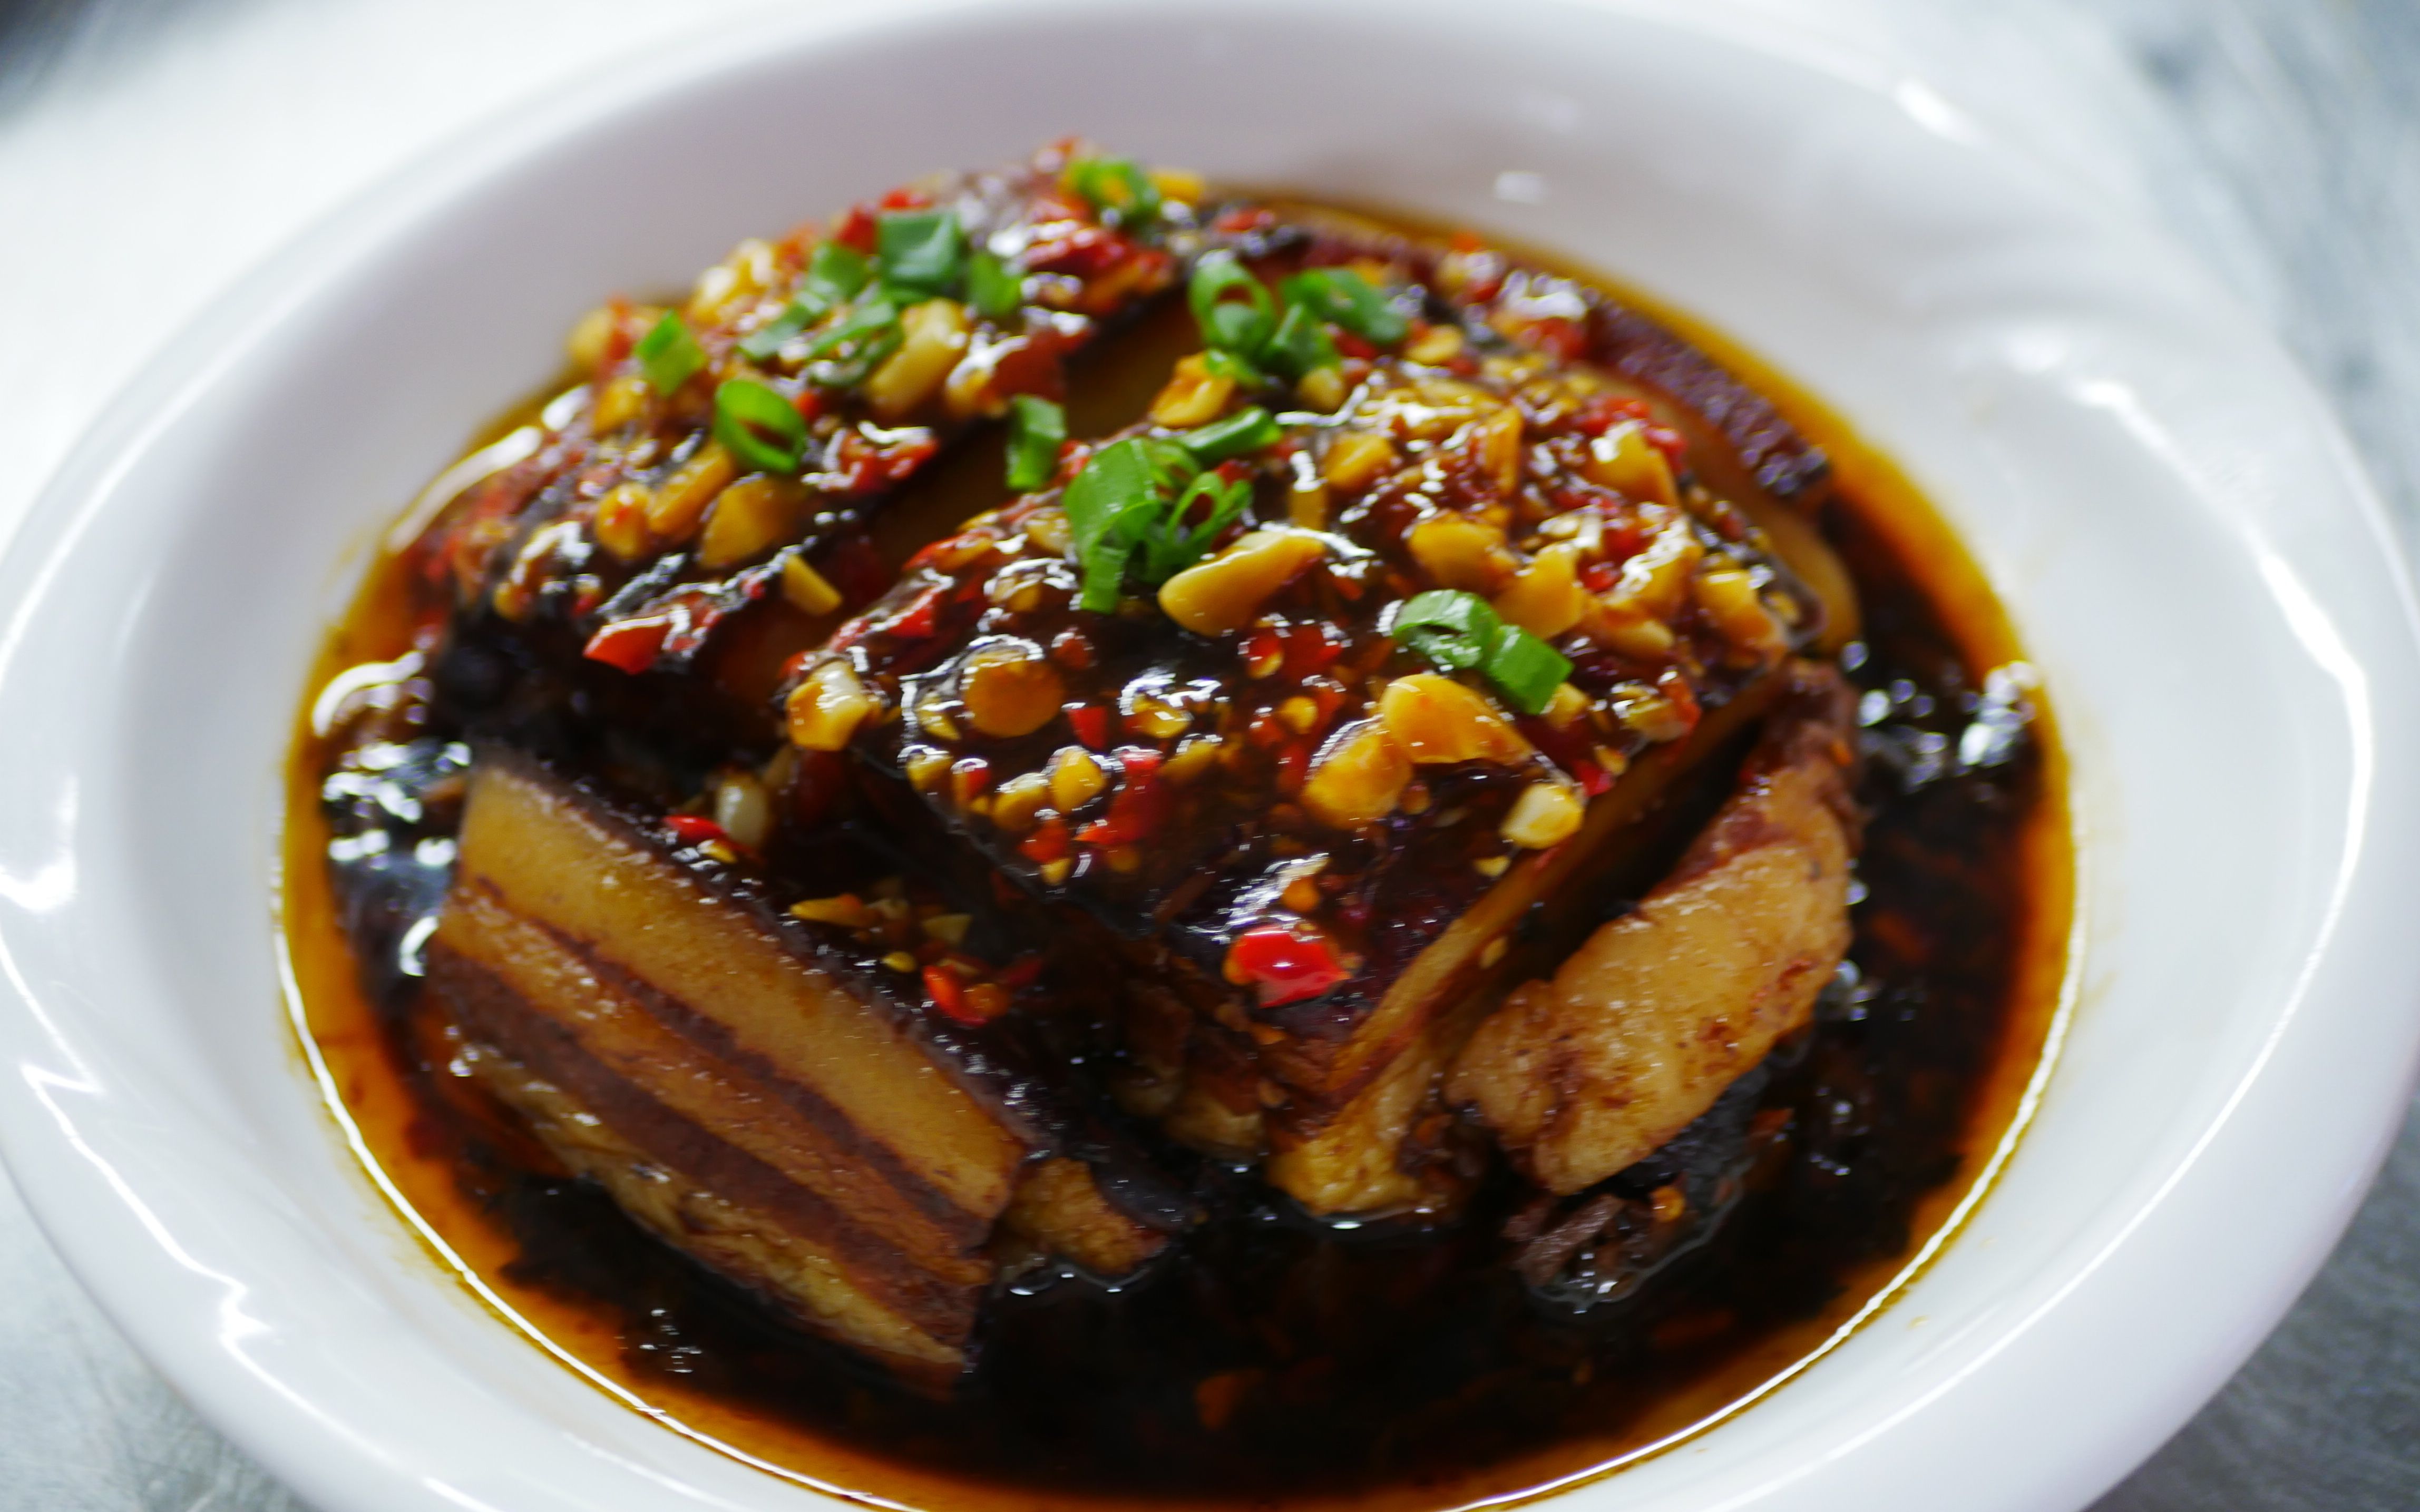 湖南美食,来看看湘潭市梅菜扣肉的做法吧!【湘菜】